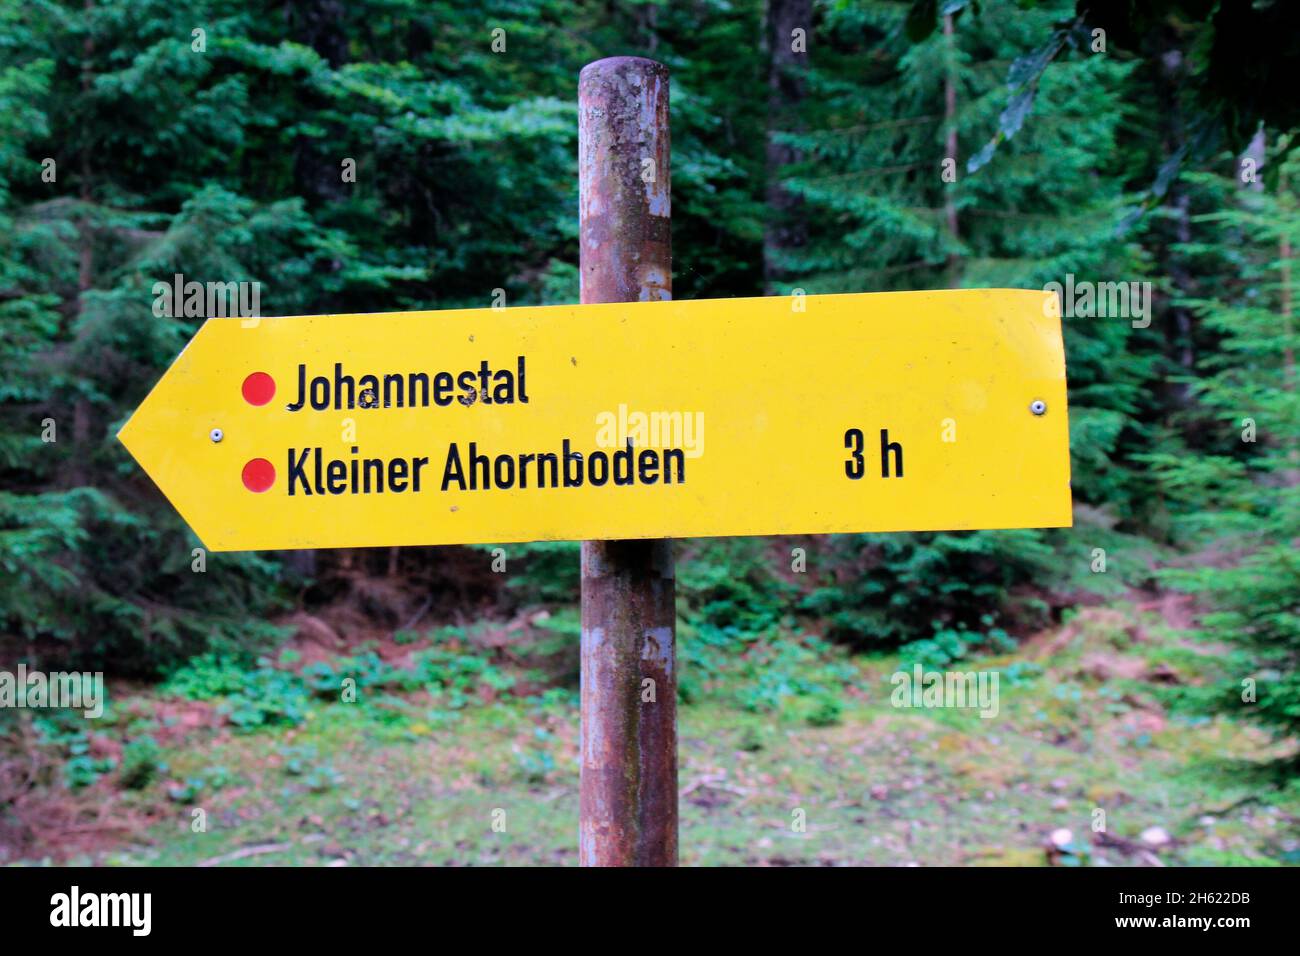 escursione in johannestal, kleiner ahornboden, cartello informativo, nel hinterriss, austria, tirolo, europa Foto Stock